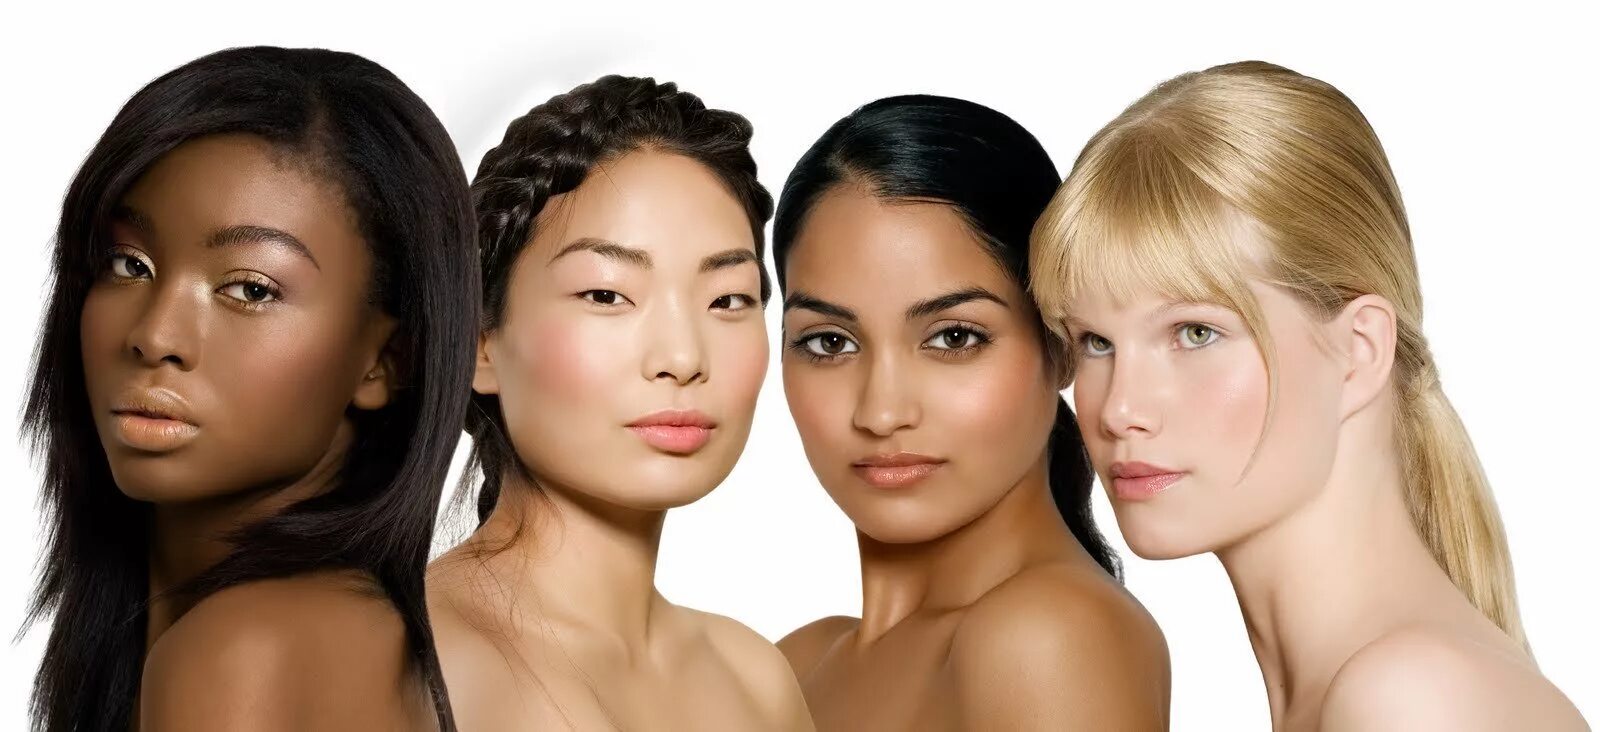 Сравнения женщин. Среднеевропейский фототип. Кельтский фототип. Женщины разных рас. Девушки с разным цветом кожи.